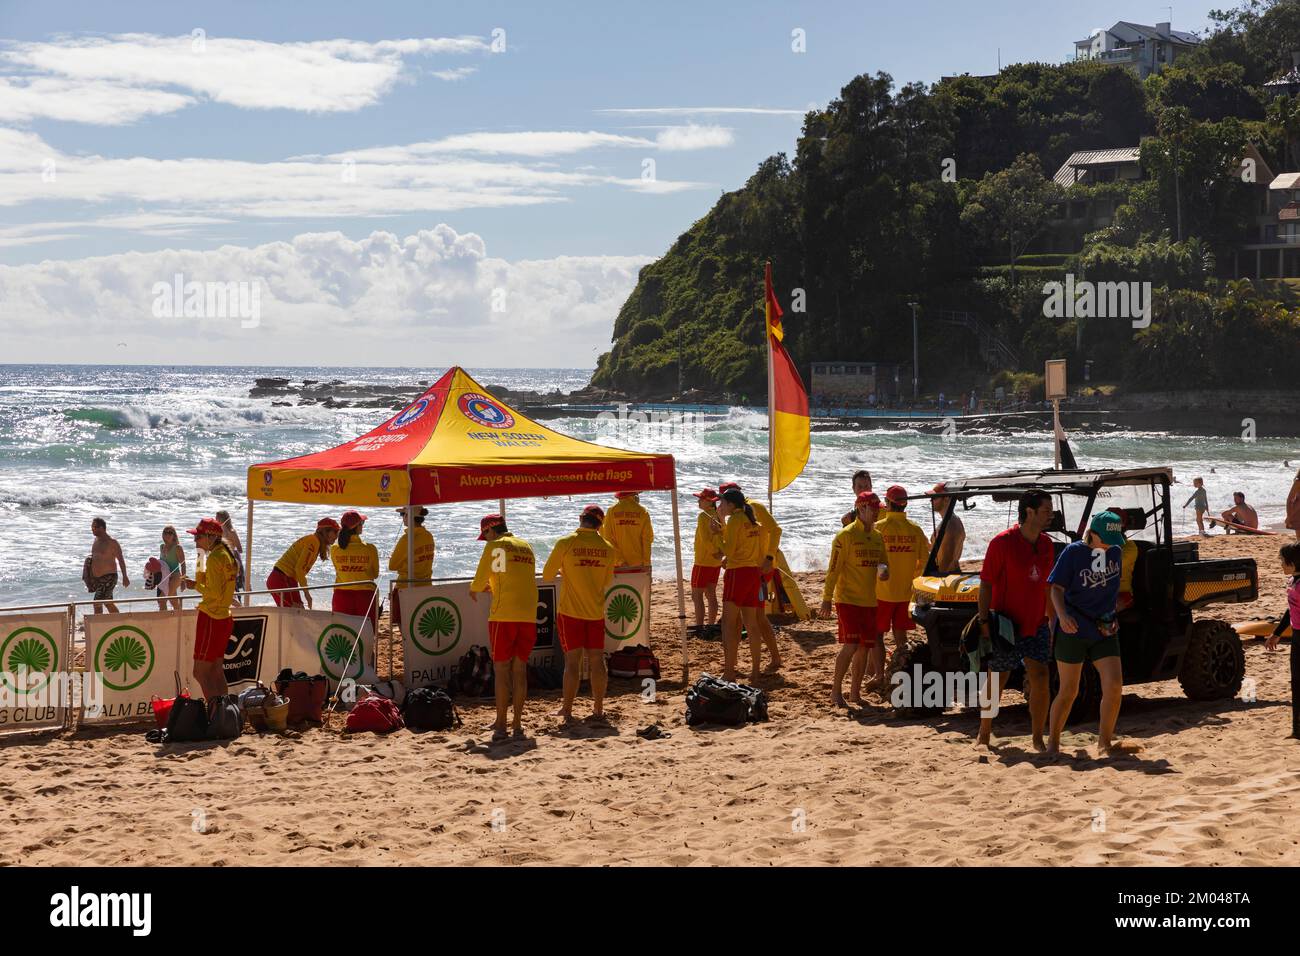 Surf sauvetage patrouille, volontaire sauveteurs surf équipe de sauvetage de Palm Beach Surf Club patrouille Palm Beach un jour d'été, Sydney, NSW, Australie Banque D'Images